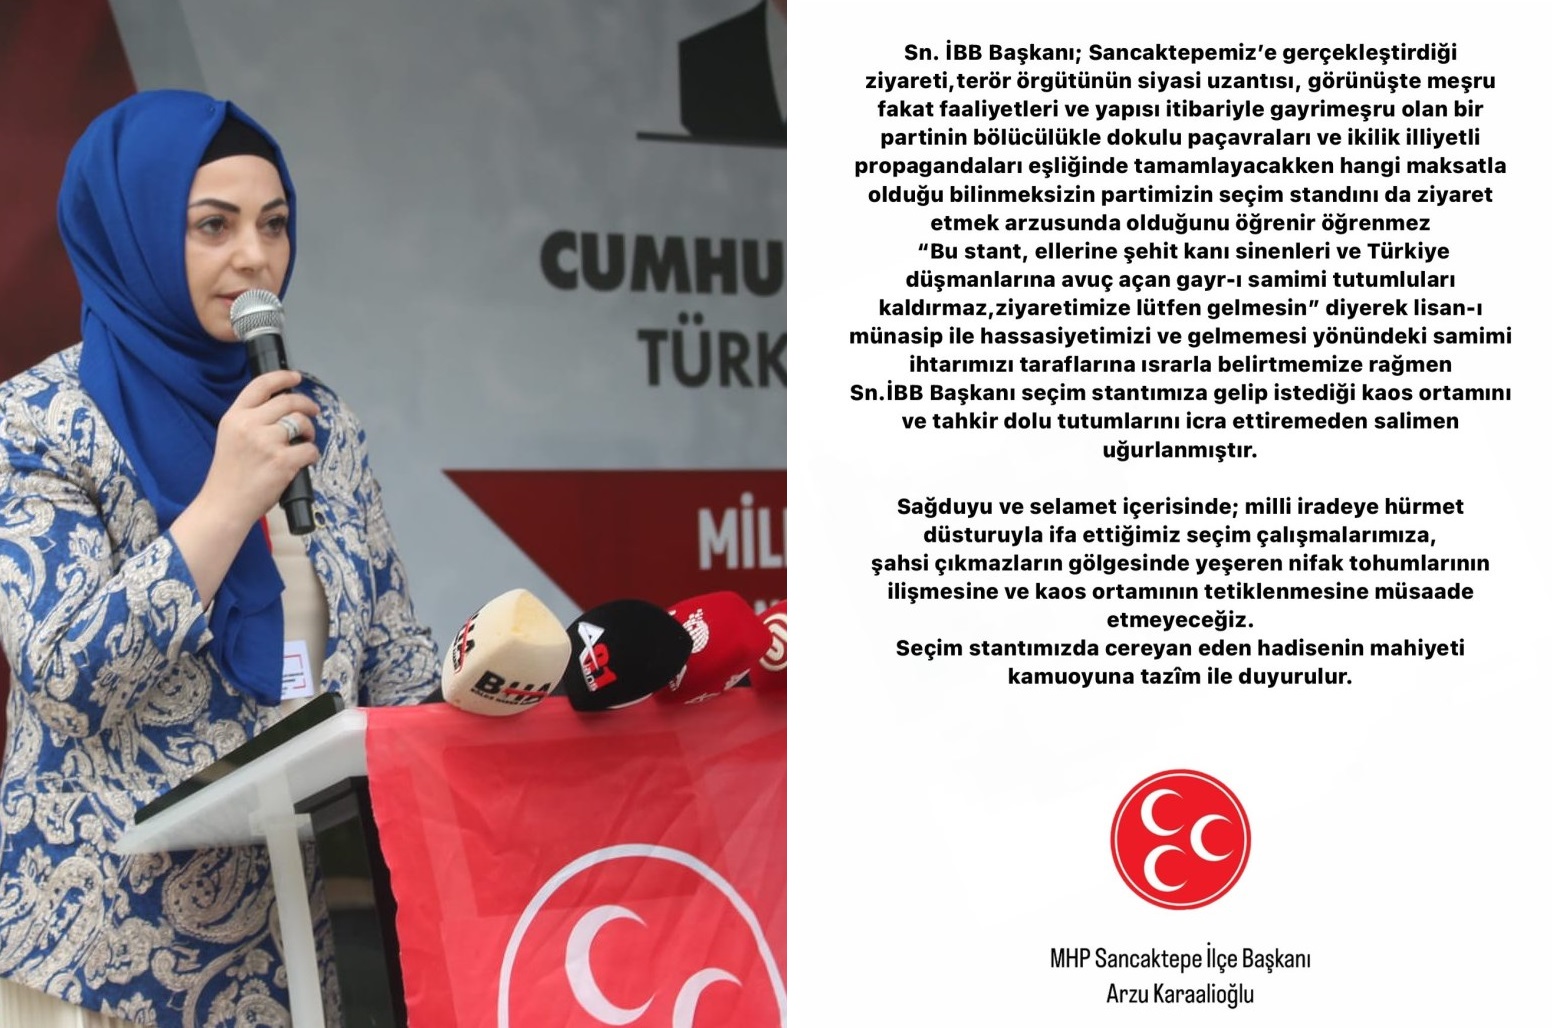 MHP'li Başkan Karaalioğlu, "Geri bas" diye stanttan kovduğu İmamoğlu'nu  'bölücülük' ile suçladı